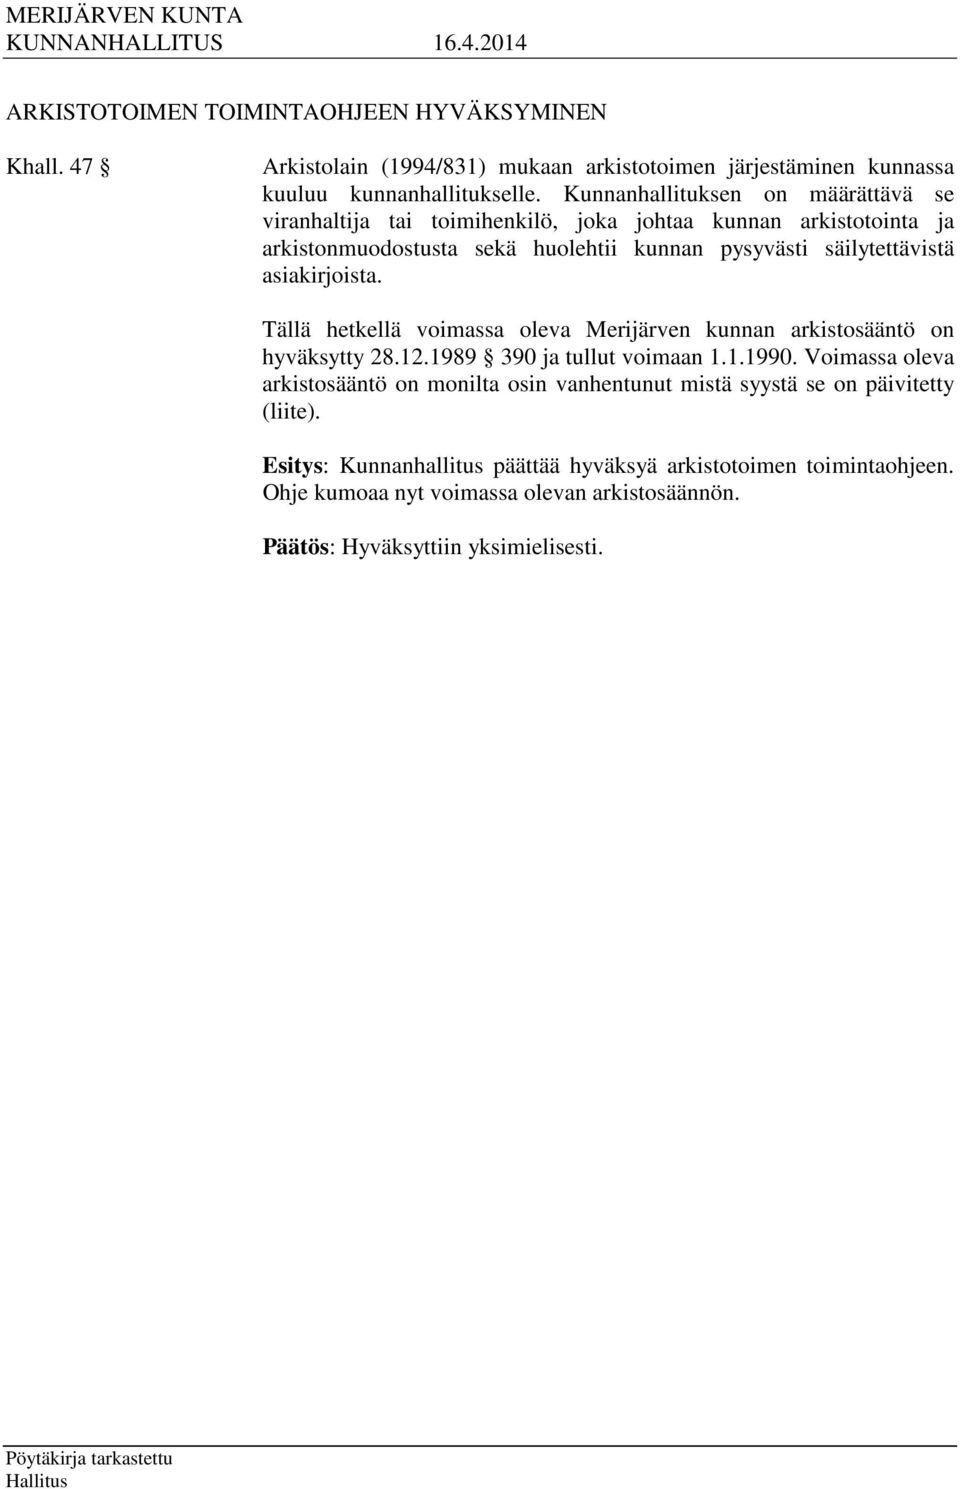 säilytettävistä asiakirjoista. Tällä hetkellä voimassa oleva Merijärven kunnan arkistosääntö on hyväksytty 28.12.1989 390 ja tullut voimaan 1.1.1990.